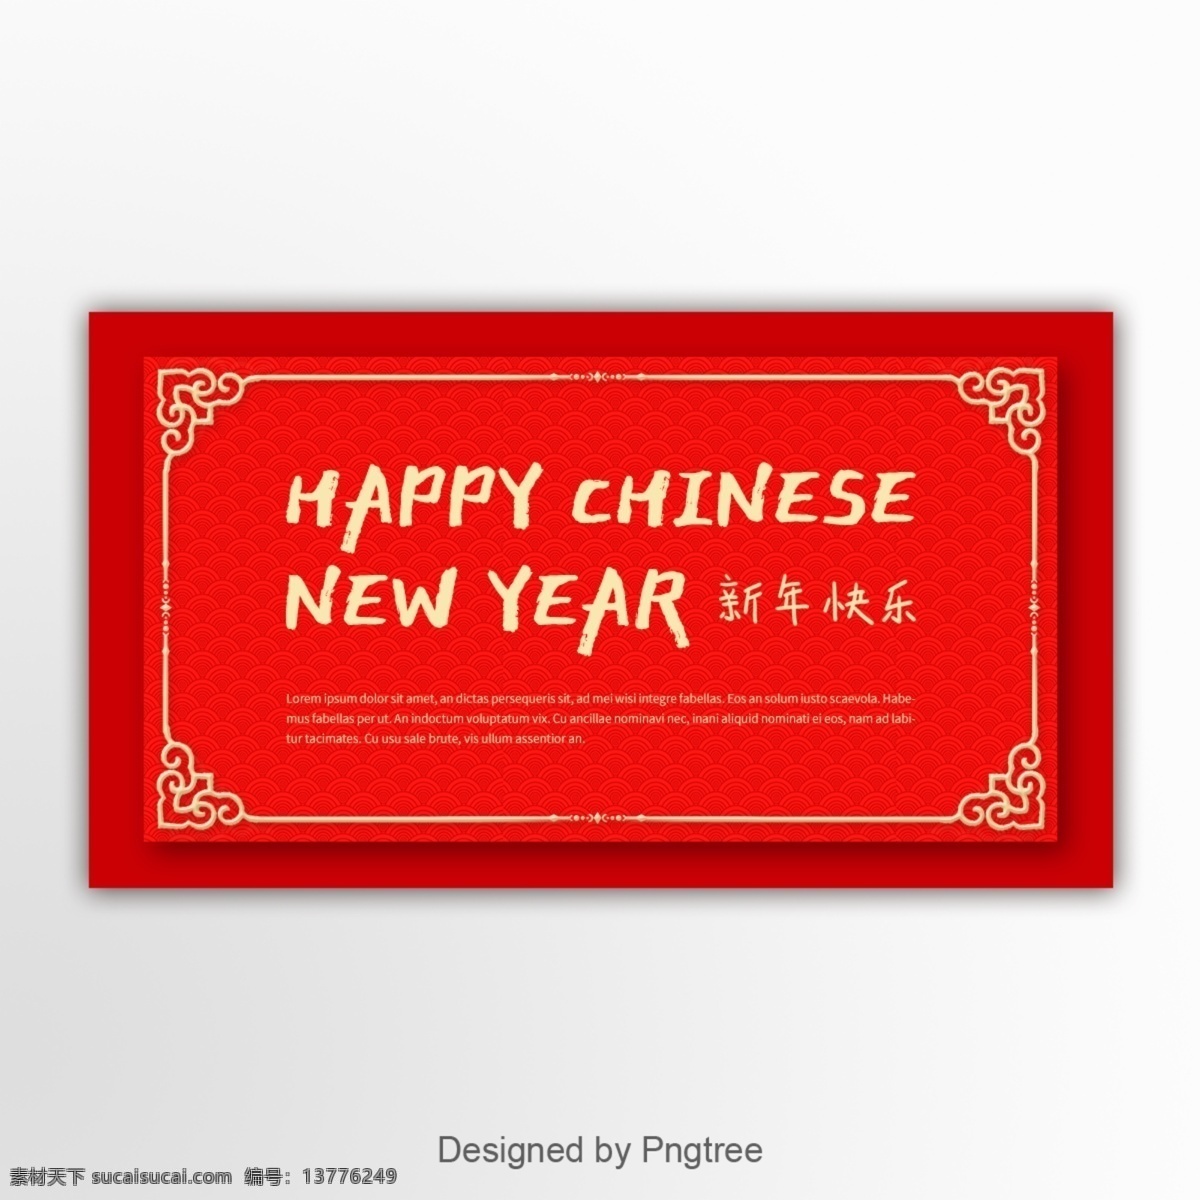 农历 新年 网站 大红色 传统 古典 样式 横幅 广告 中国 红色 装饰图案